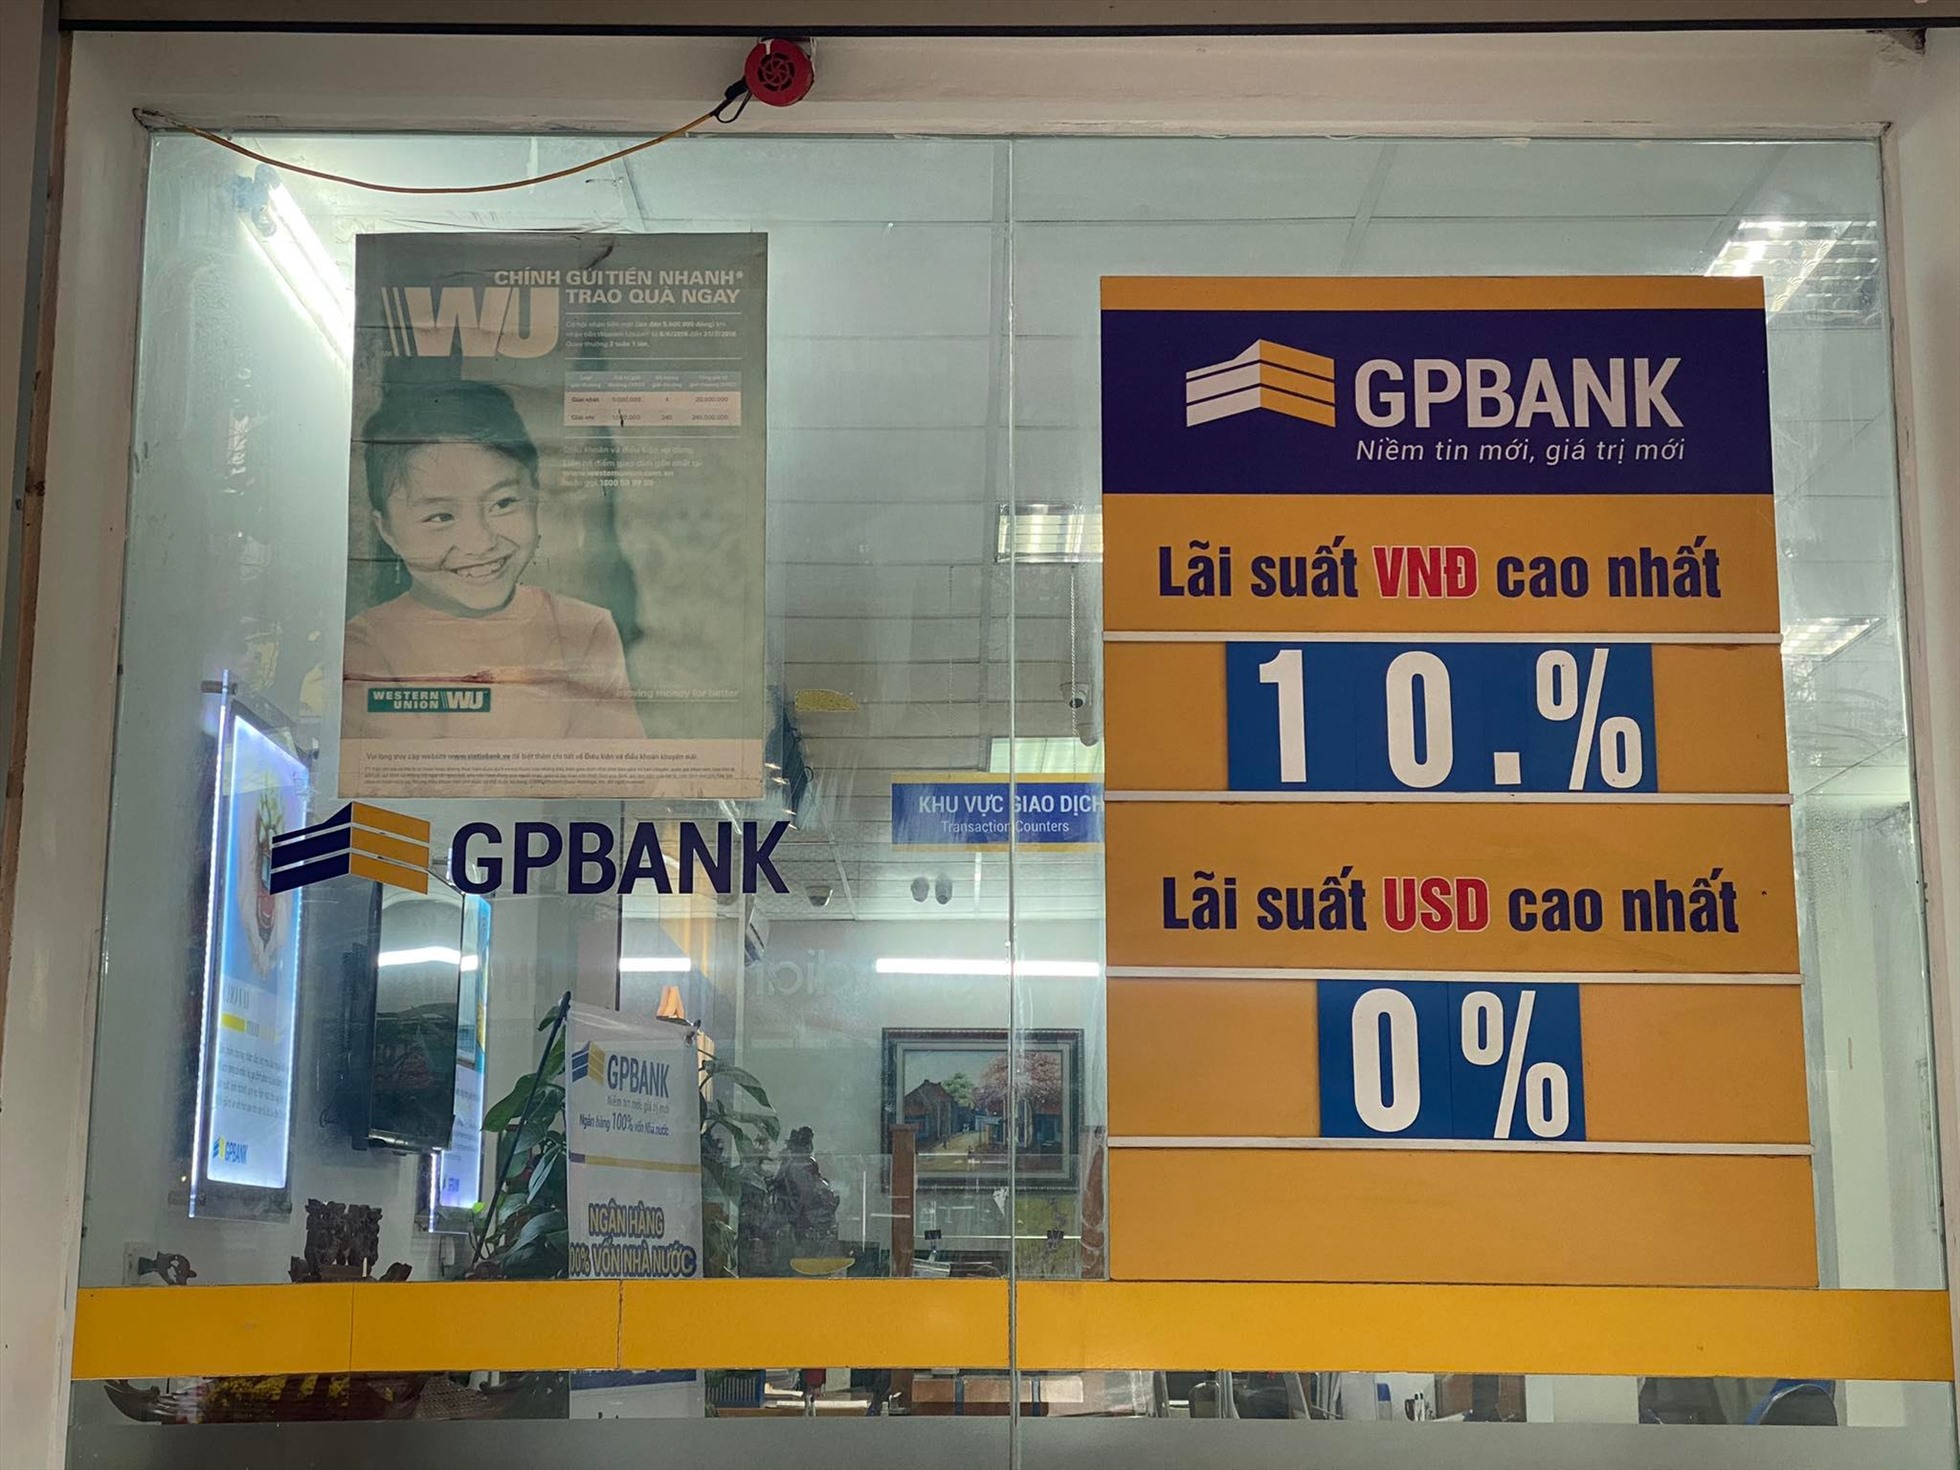 GPBank hiện niêm yết công khai lãi suất cao nhất lên tới 10%.